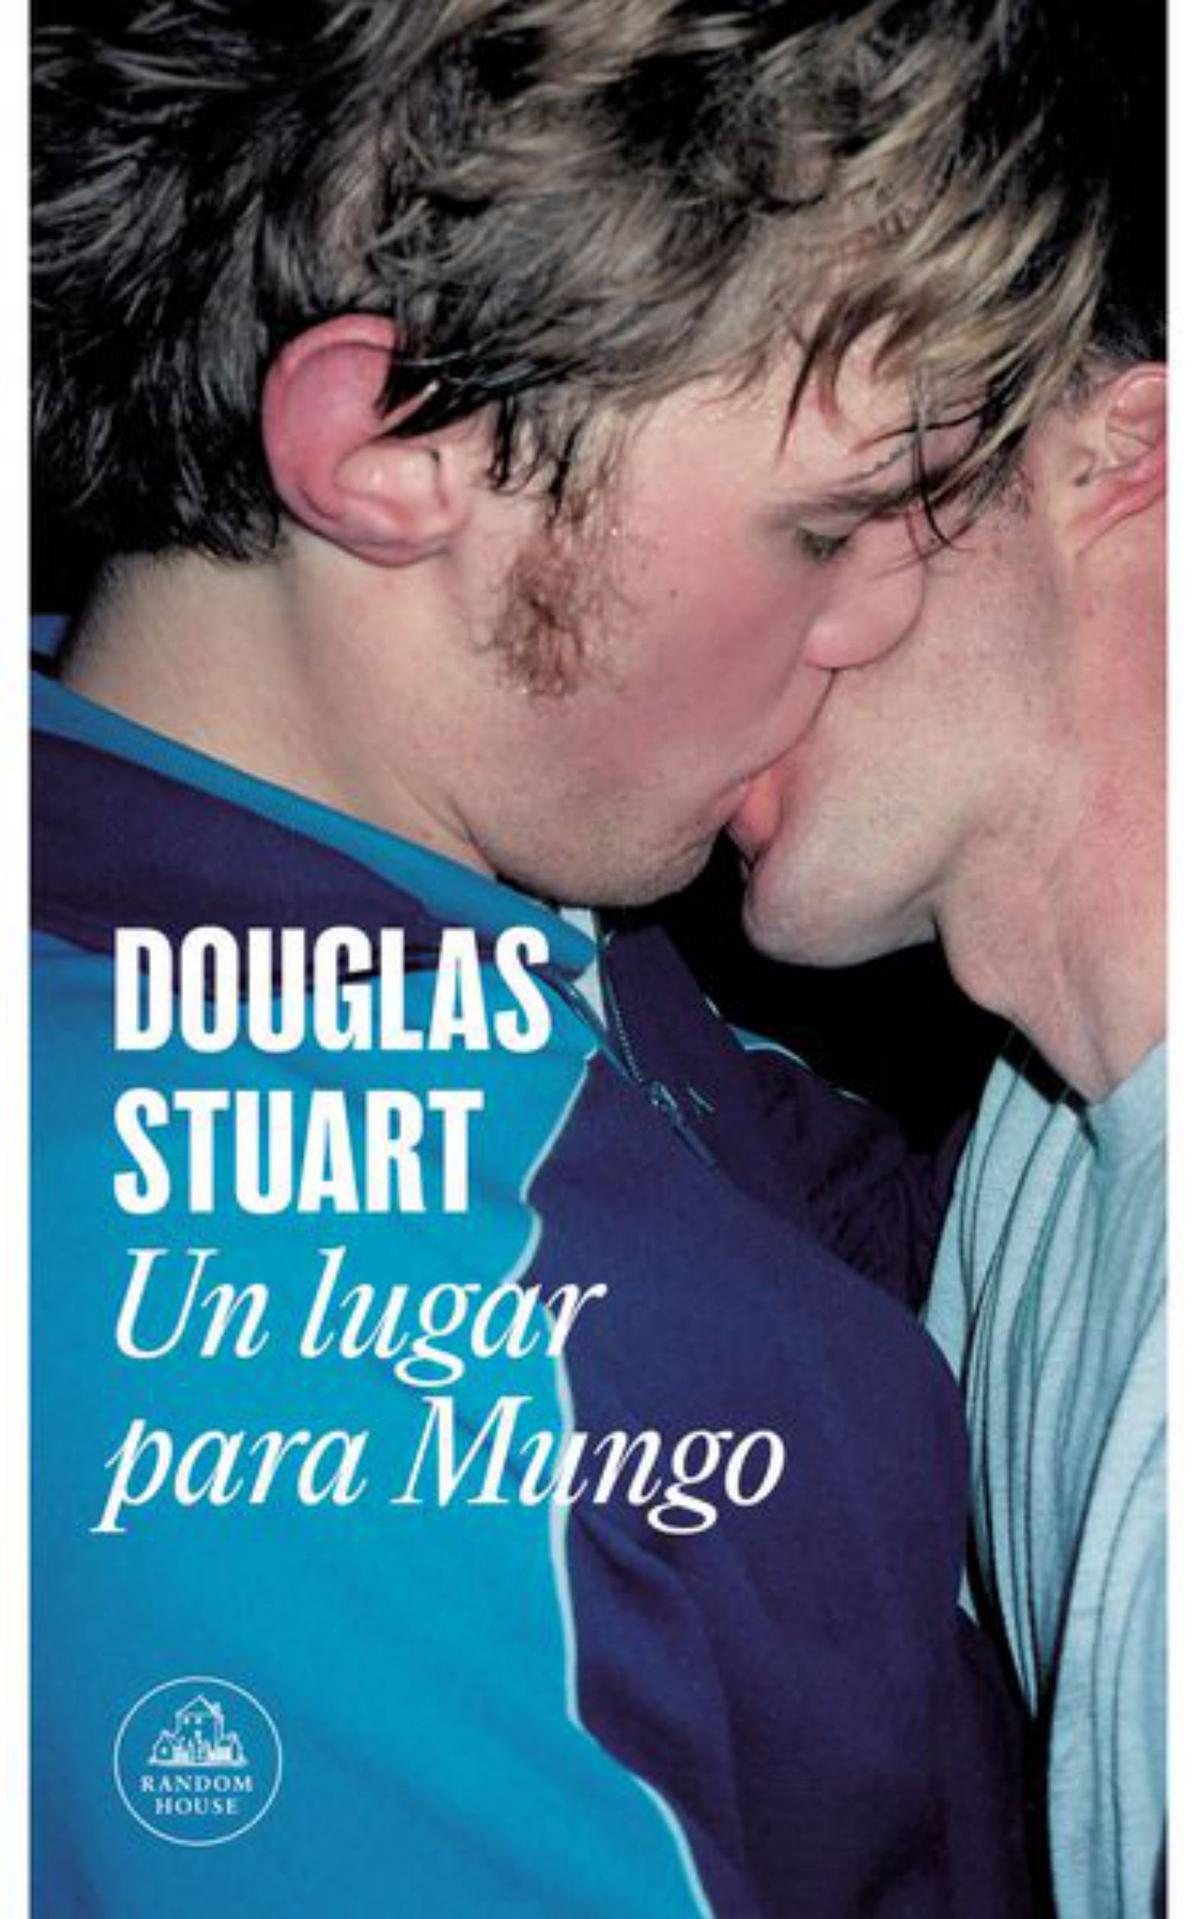 Douglas StuartDos adolescentes gays defienden su amor